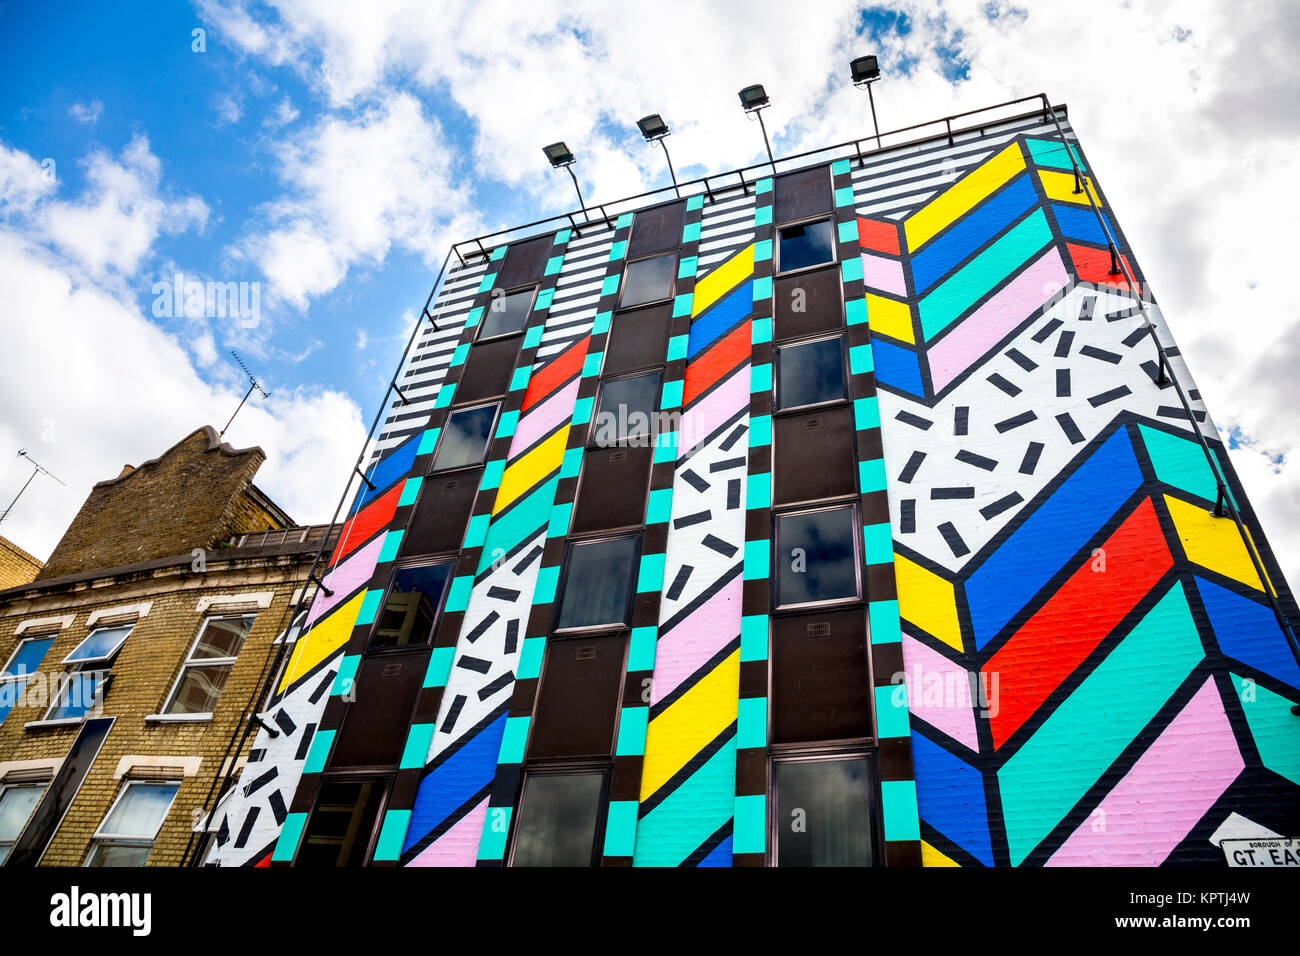 Variopinto edificio dipinto con grafico a zig-zag patterns per artista Camille Walala intitolato "sogno che si avvera", Great Eastern Street, Londra, Regno Unito Foto Stock